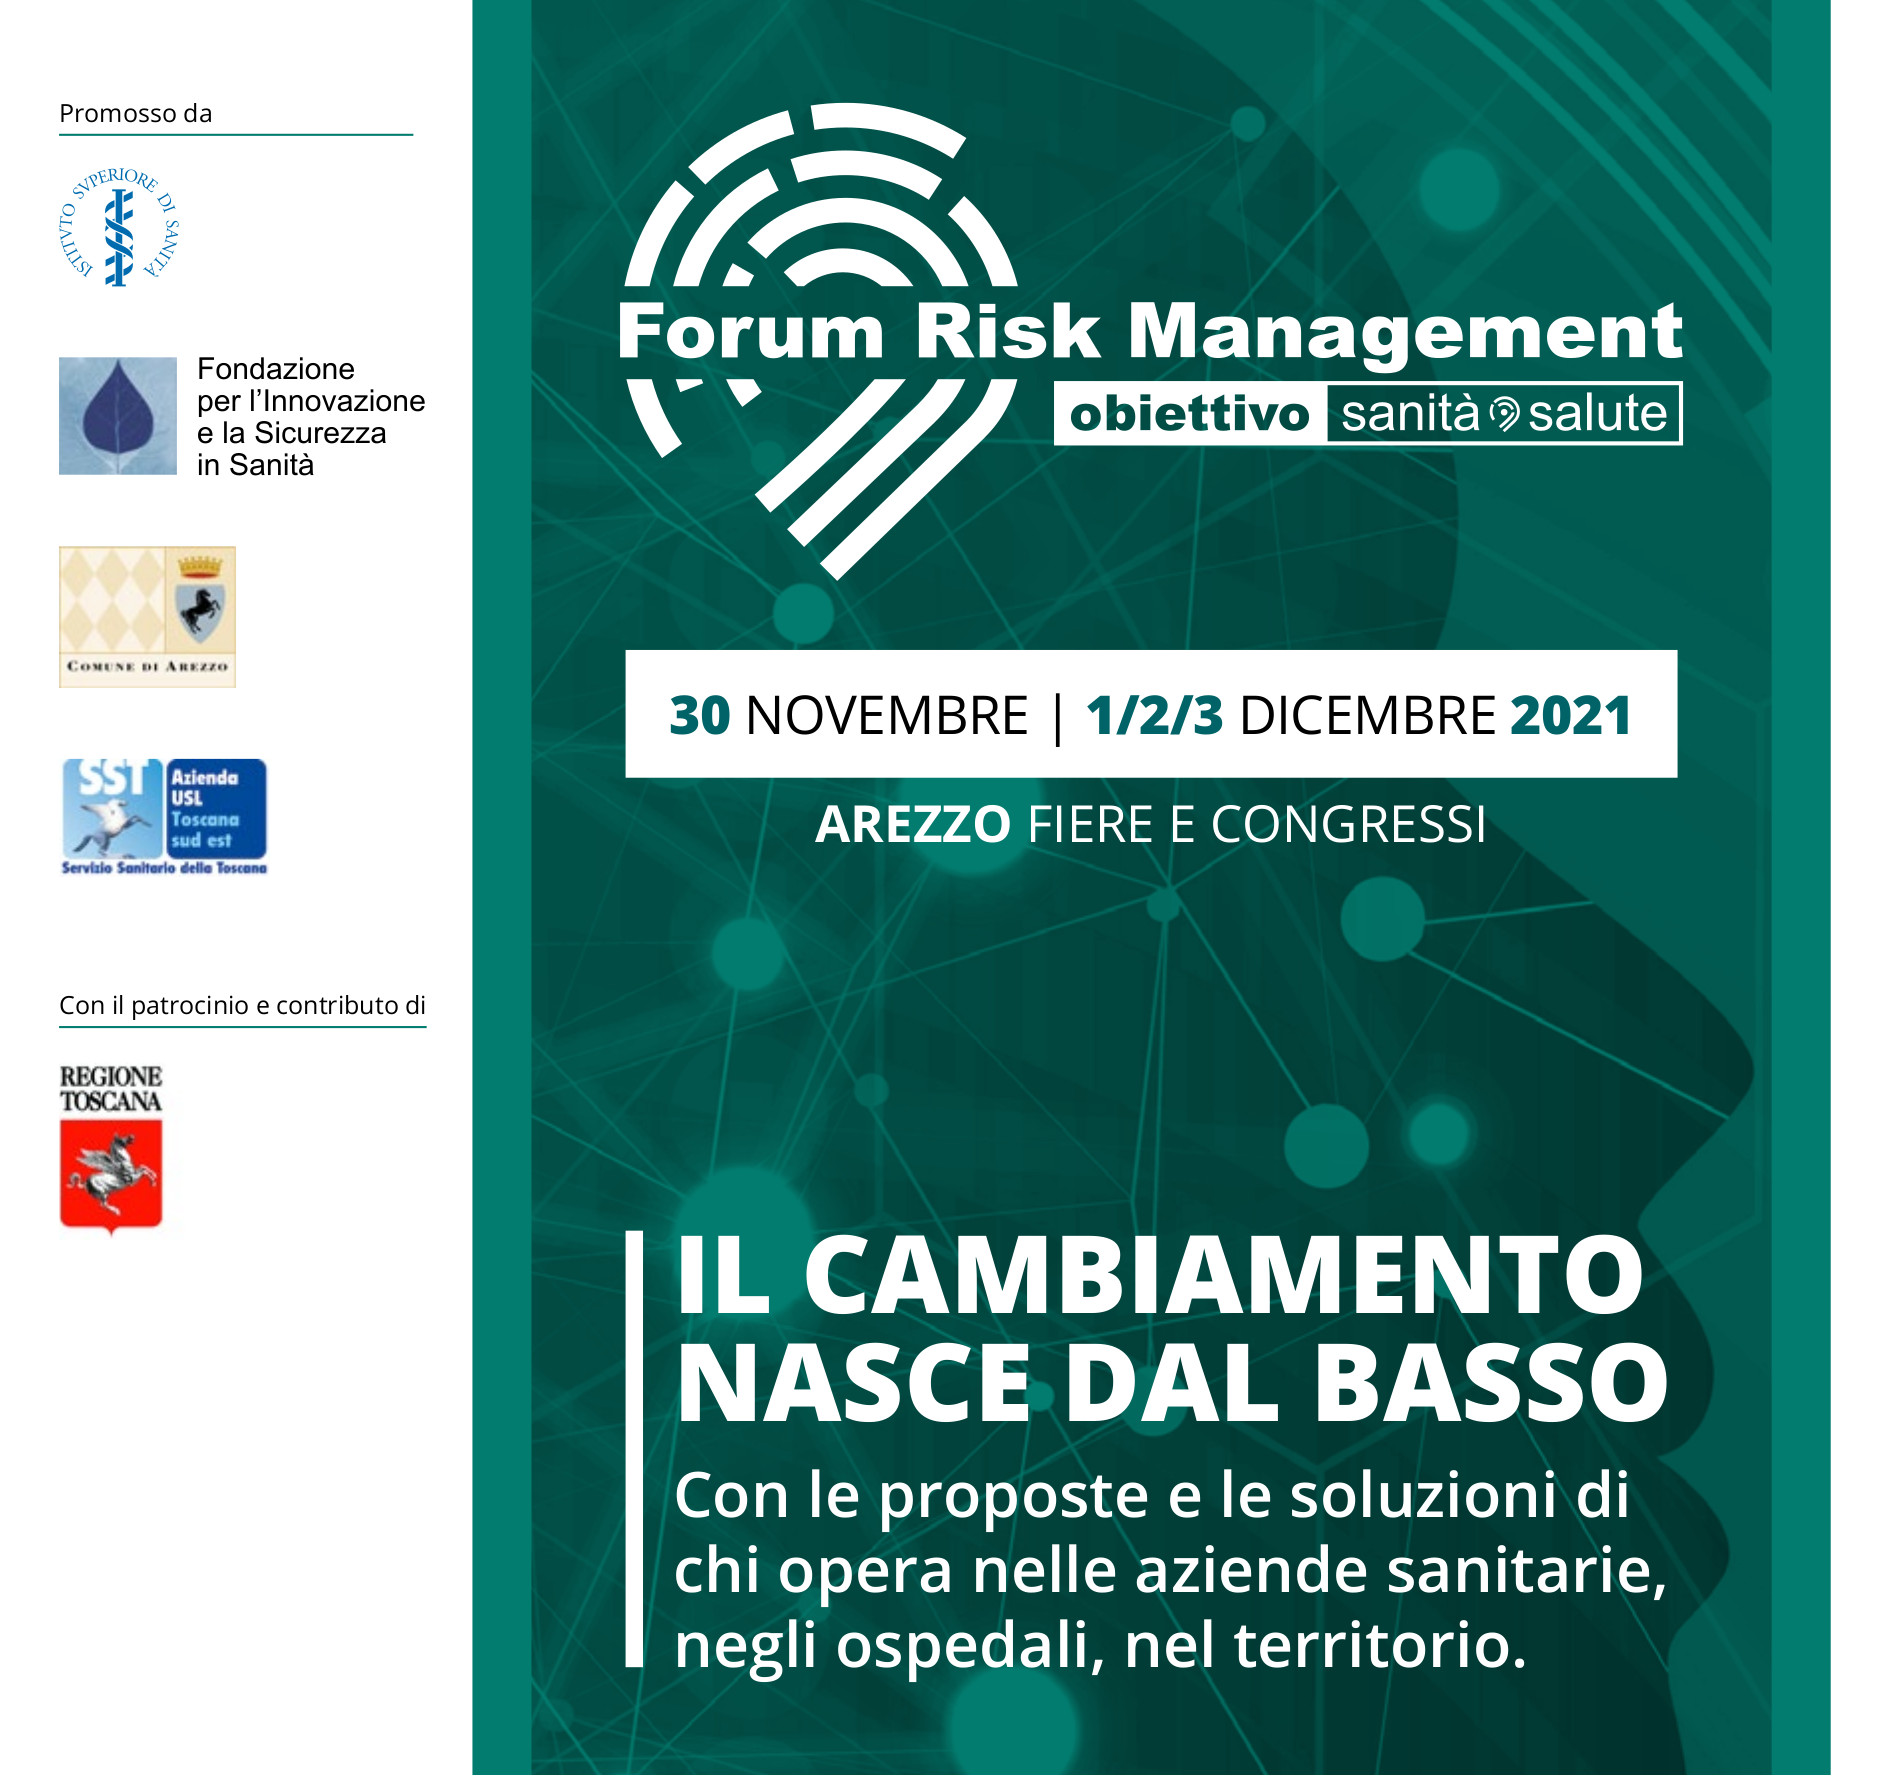 Forum Risk Management in sanità, Silvio Brusaferro ad Arezzo martedì 30 novembre